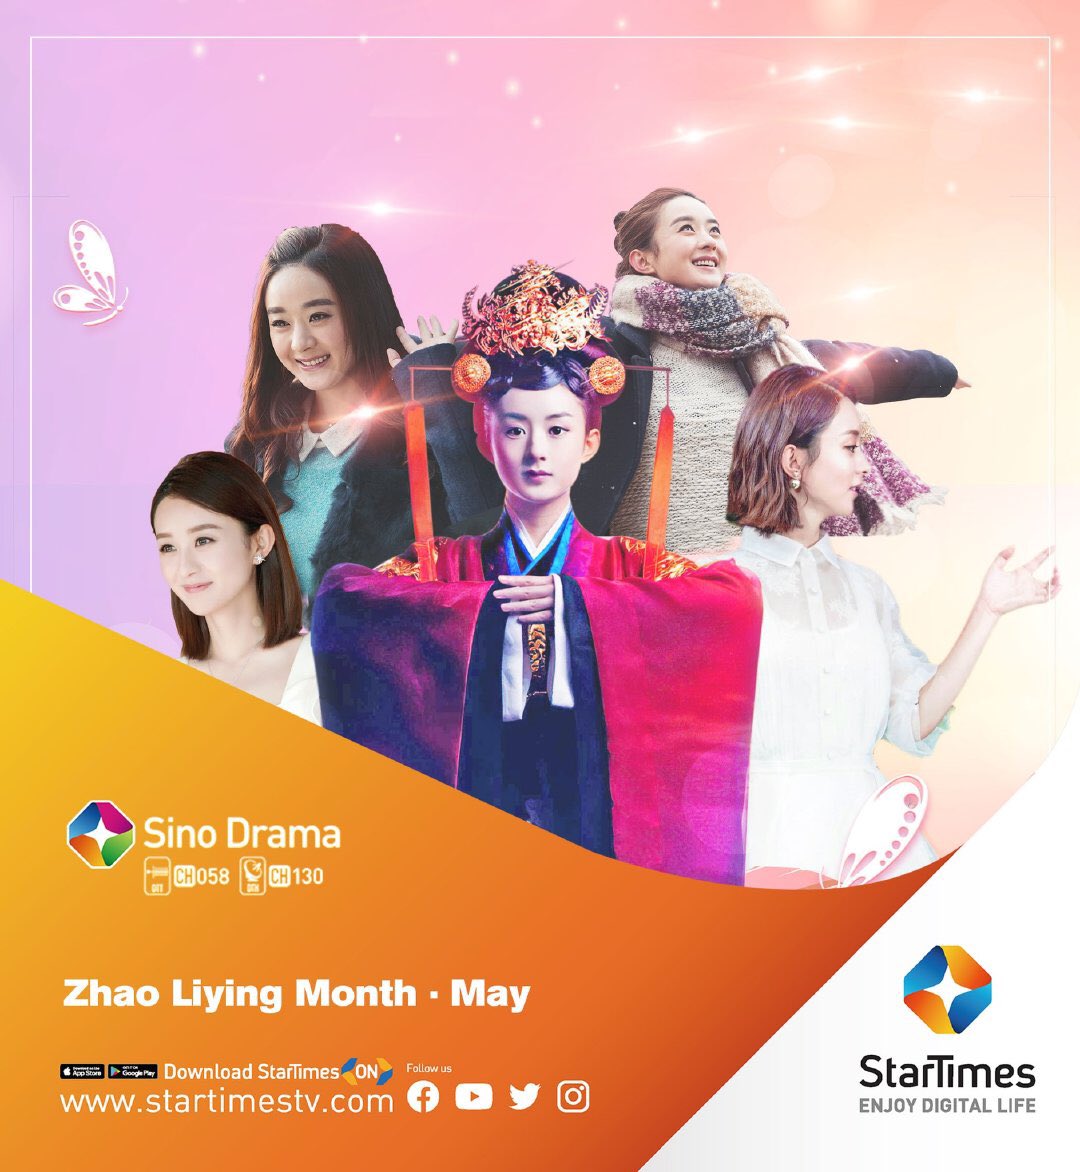 สถานีโทรทัศน์แอฟริกัน StarTimes Sino Drama Channel พฤษภาคม Zhao Liying ออกอากาศละครแนวเดือน ละครหลายเรื่องที่นำแสดงโดย Zhao Liying จะออกอากาศอย่างต่อเนื่องในหลายช่วงเวลา เดือนพฤษภาคมเป็นเดือนที่ละครของ Zhao Liying จะออกอากาศ #ZhaoLiying